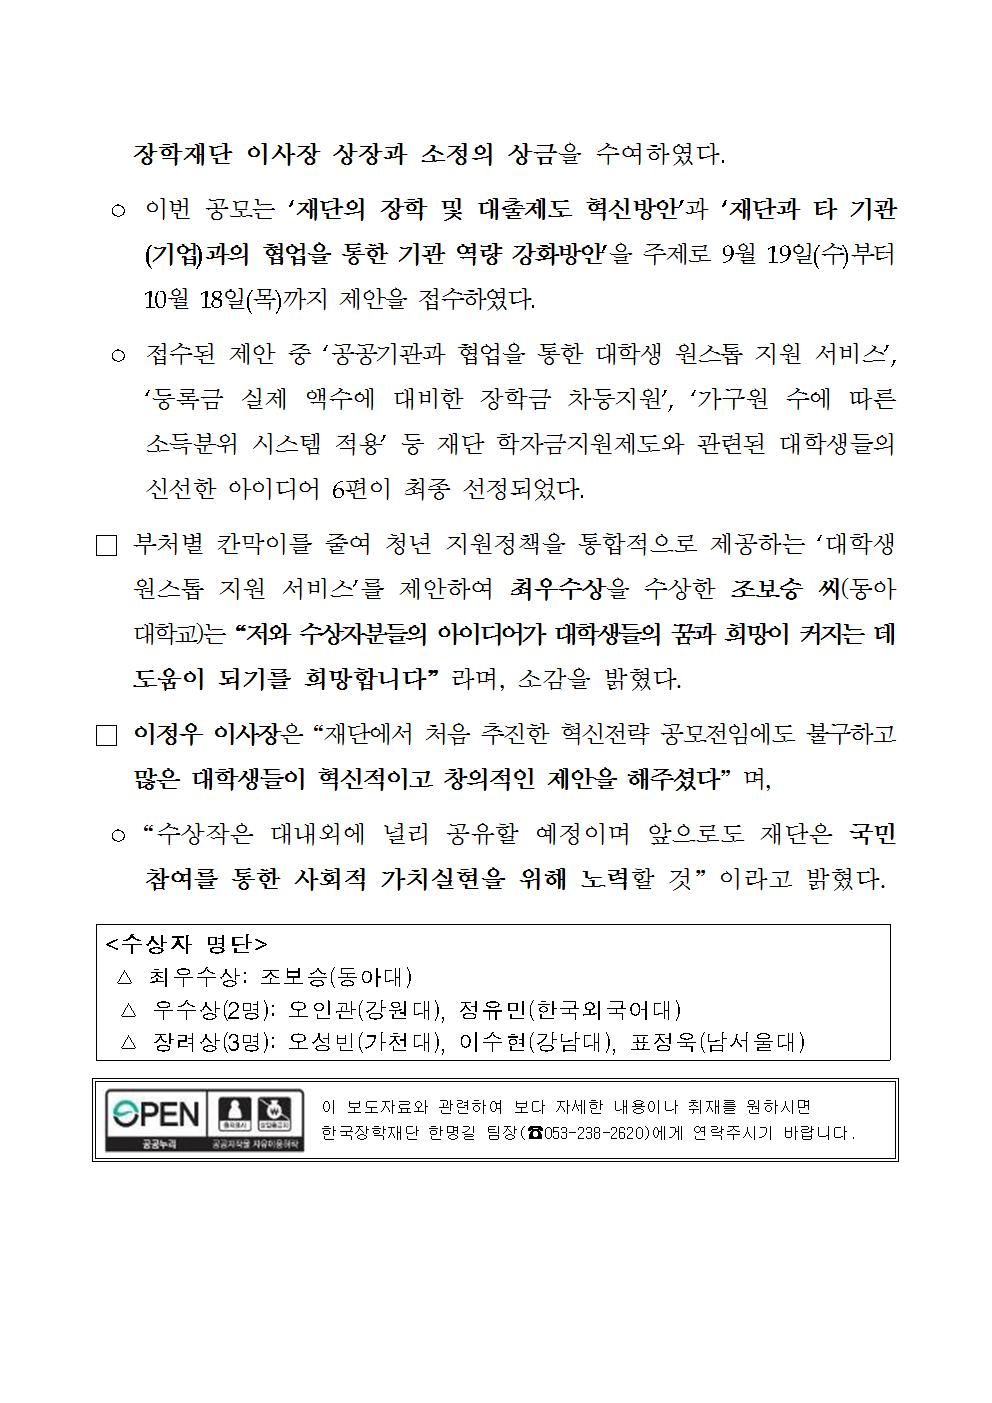 12-03(월)[보도자료] 한국장학재단 혁신 전략 공모전 시상식 개최002.jpg